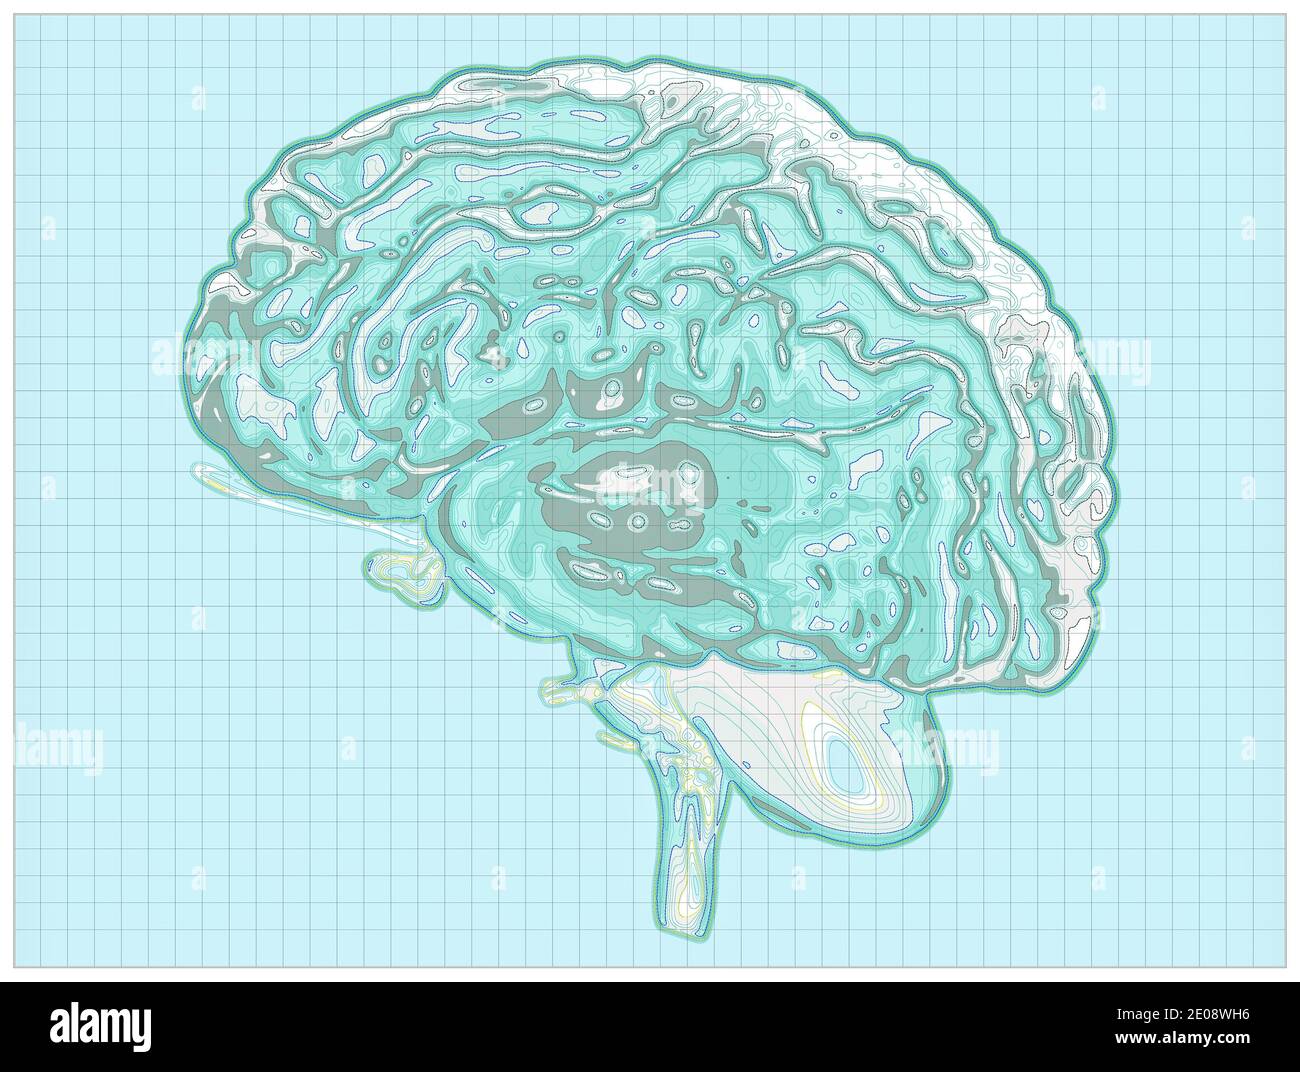 Carte géographique du cerveau, retravailler le cerveau humain sous la forme d'une carte. Concept. Acquisition CT. rendu 3d. Hauteurs et orographie, relief montagneux Banque D'Images